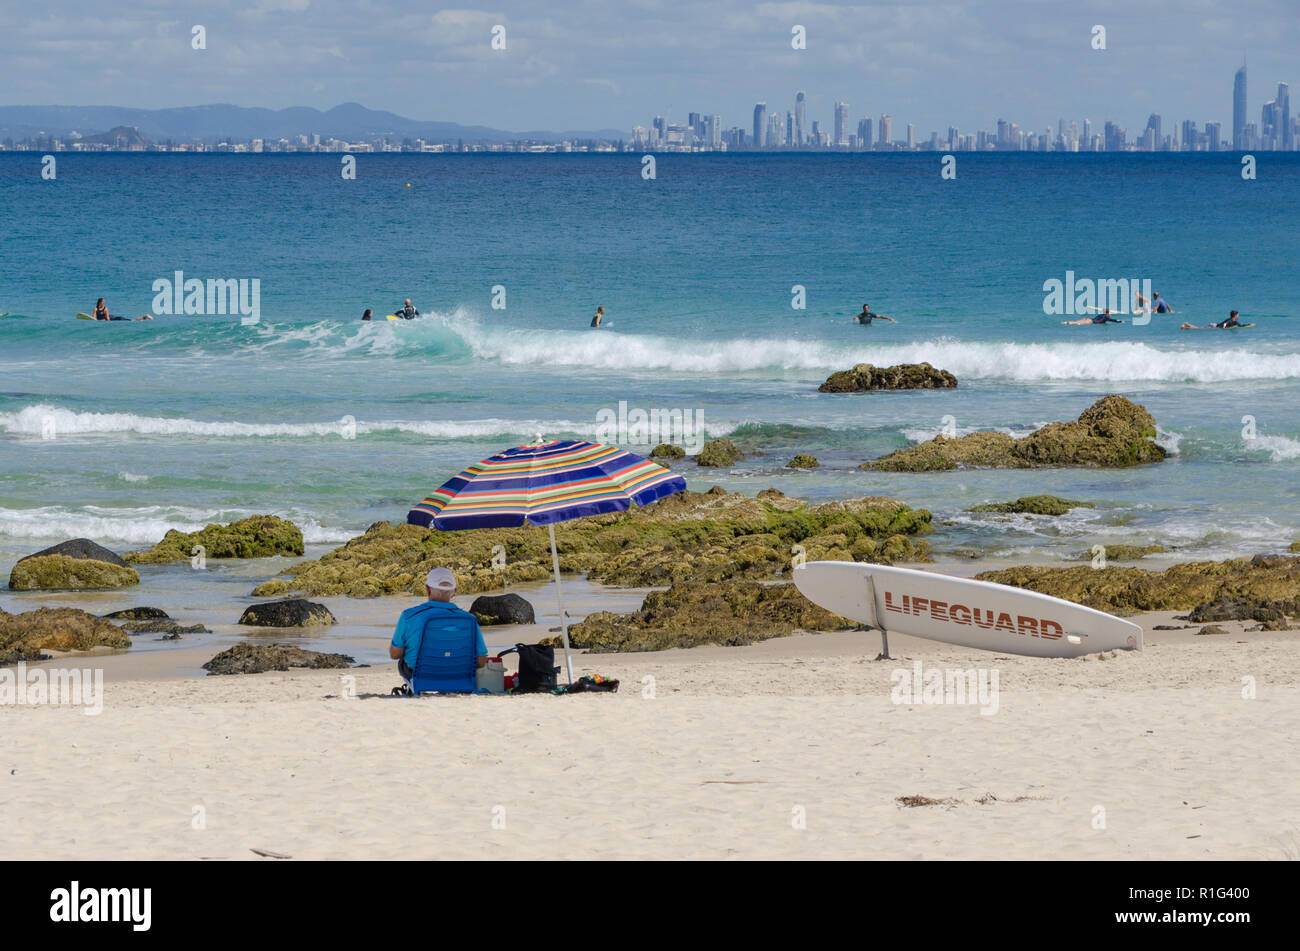 Bagnino di salvataggio si siede sulla spiaggia nell'ombra di un ombrello guardando i surfisti e con vista sullo skyline di Paradiso del Surf in background. Foto Stock